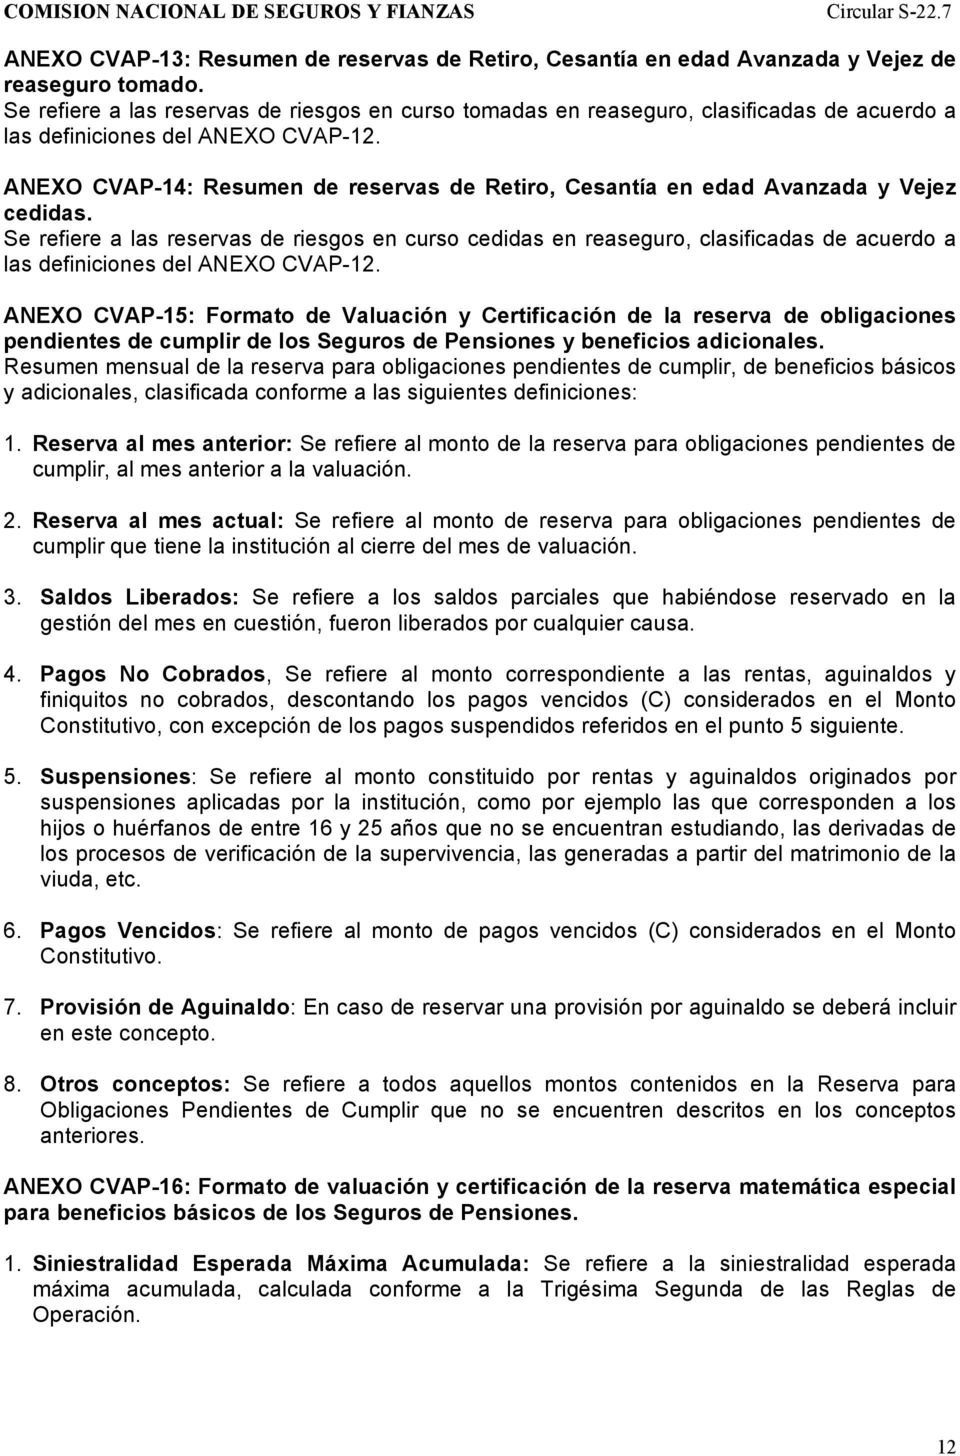 ANEXO CVAP-14: Resumen de reservas de Retiro, Cesantía en edad Avanzada y Vejez cedidas.